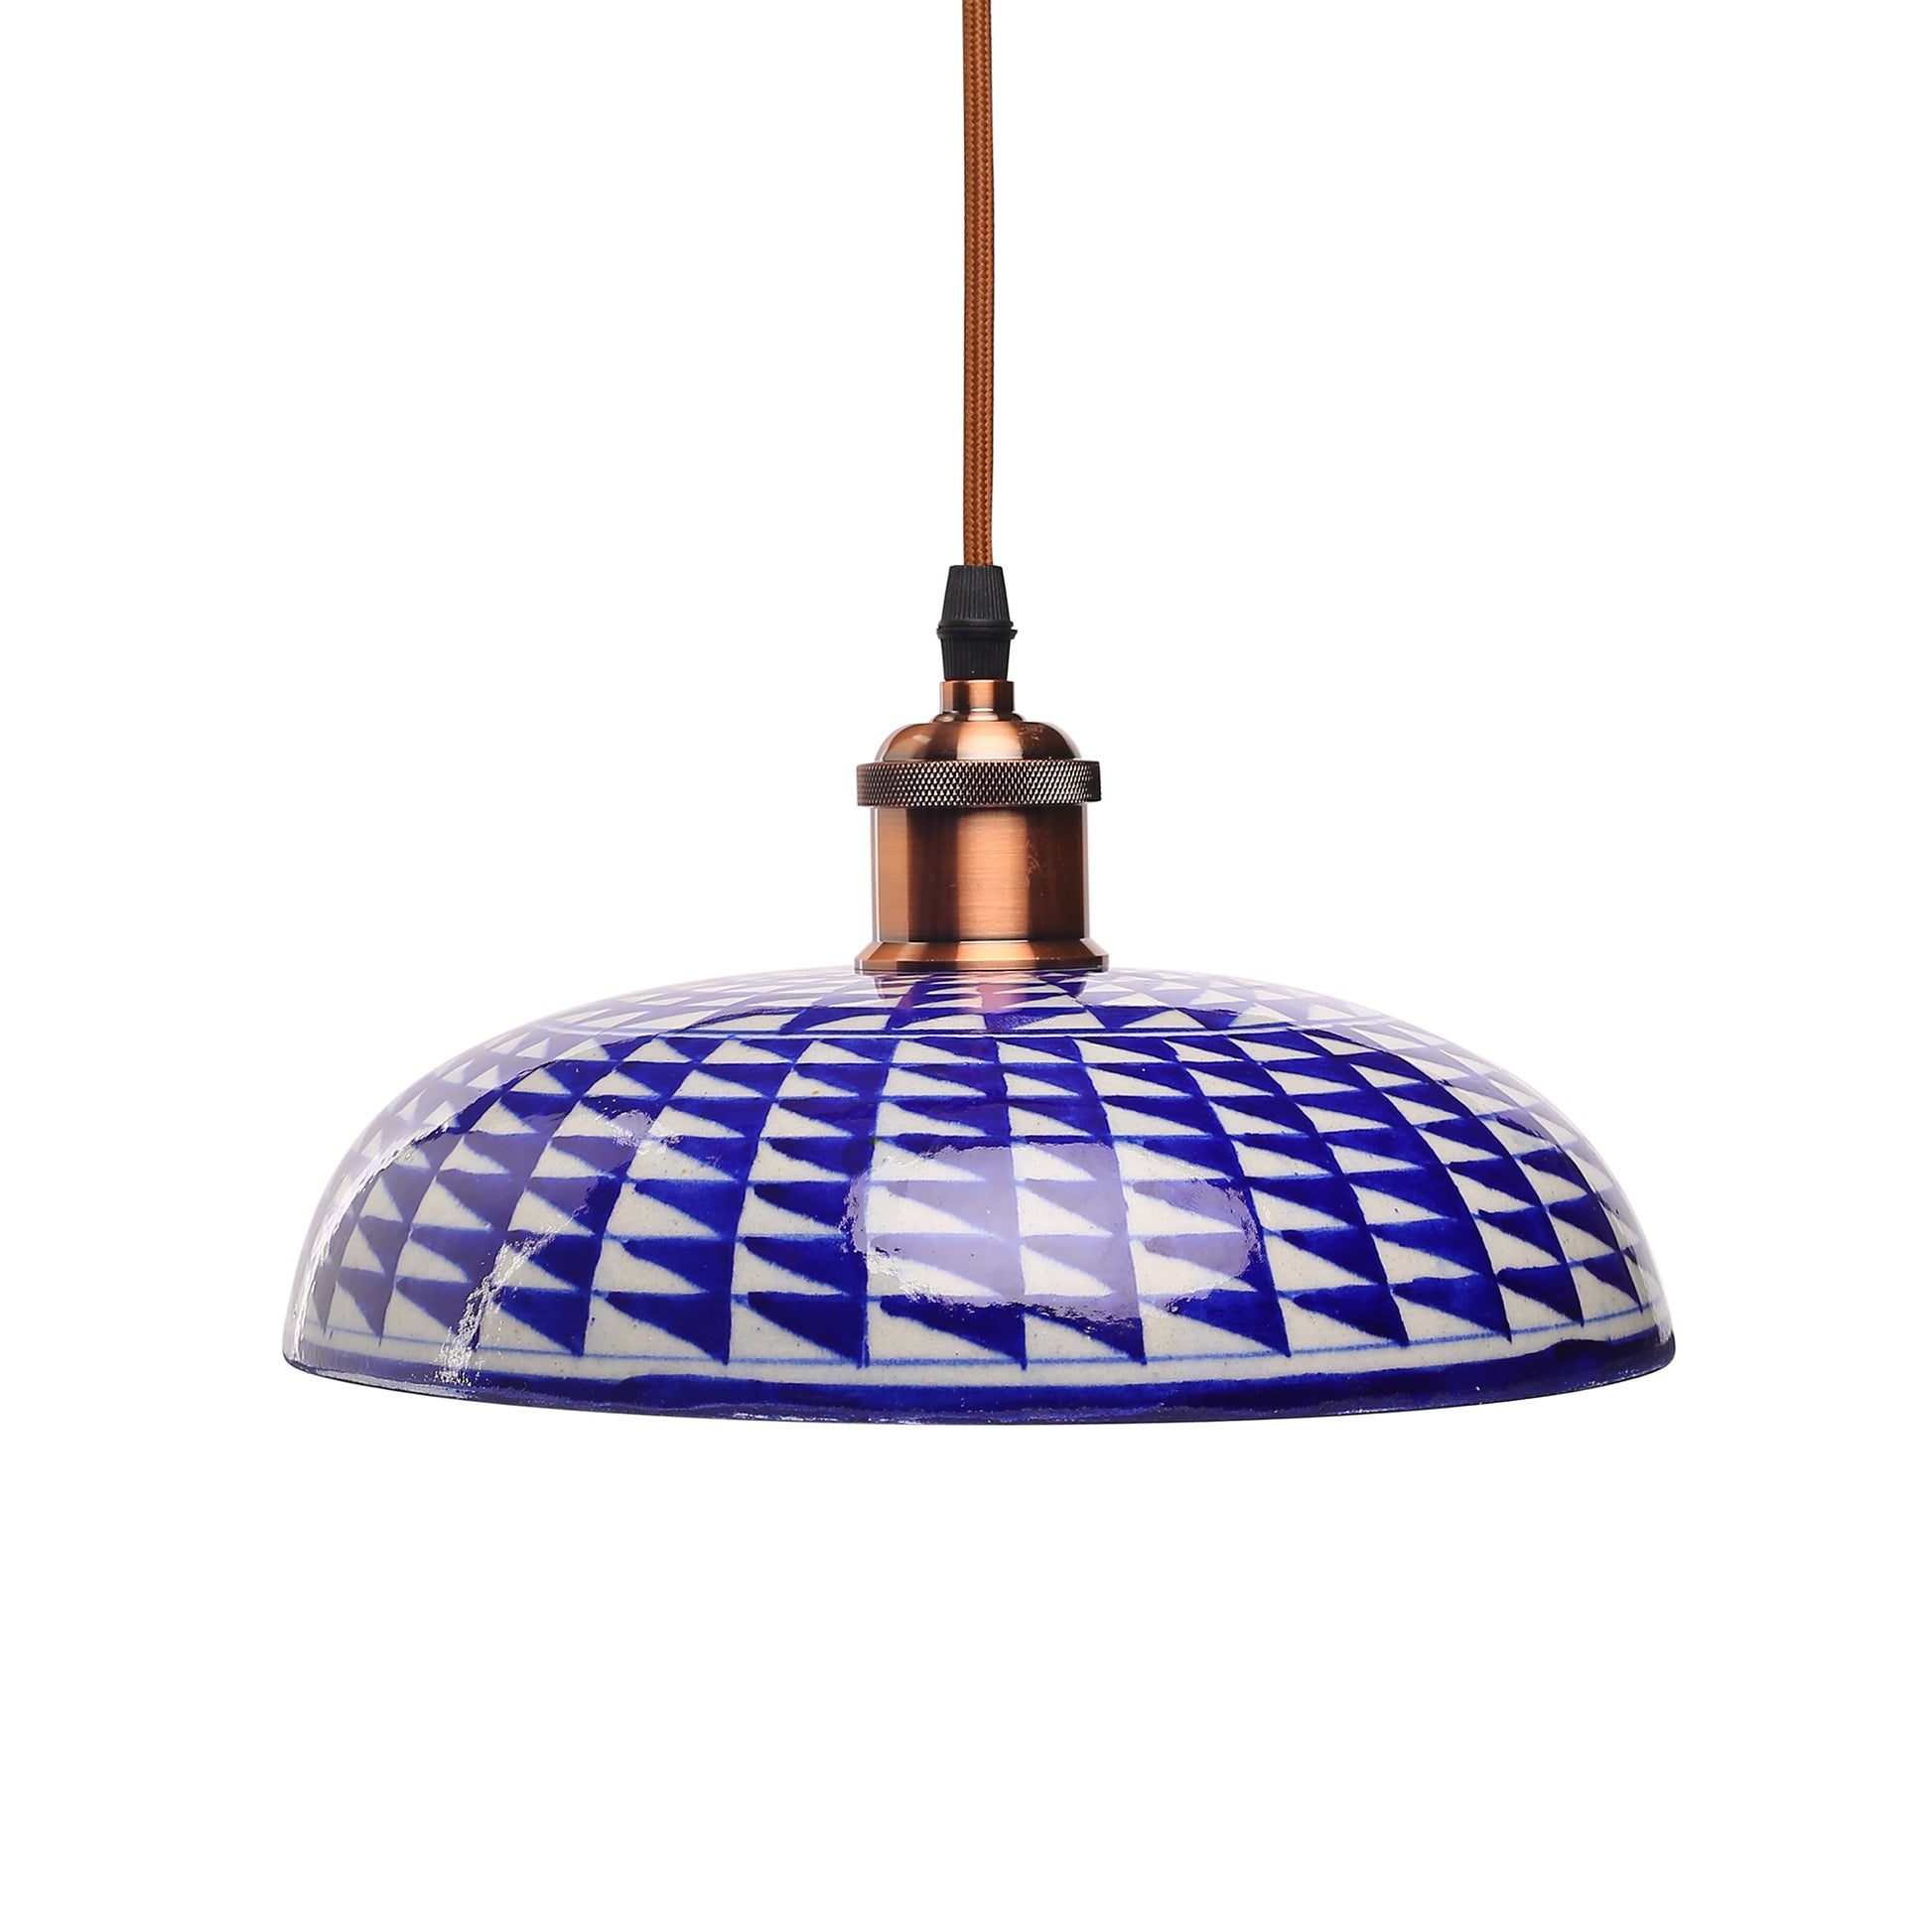 Blue Pottery Hanging Lamp Shade - Indigo Blue